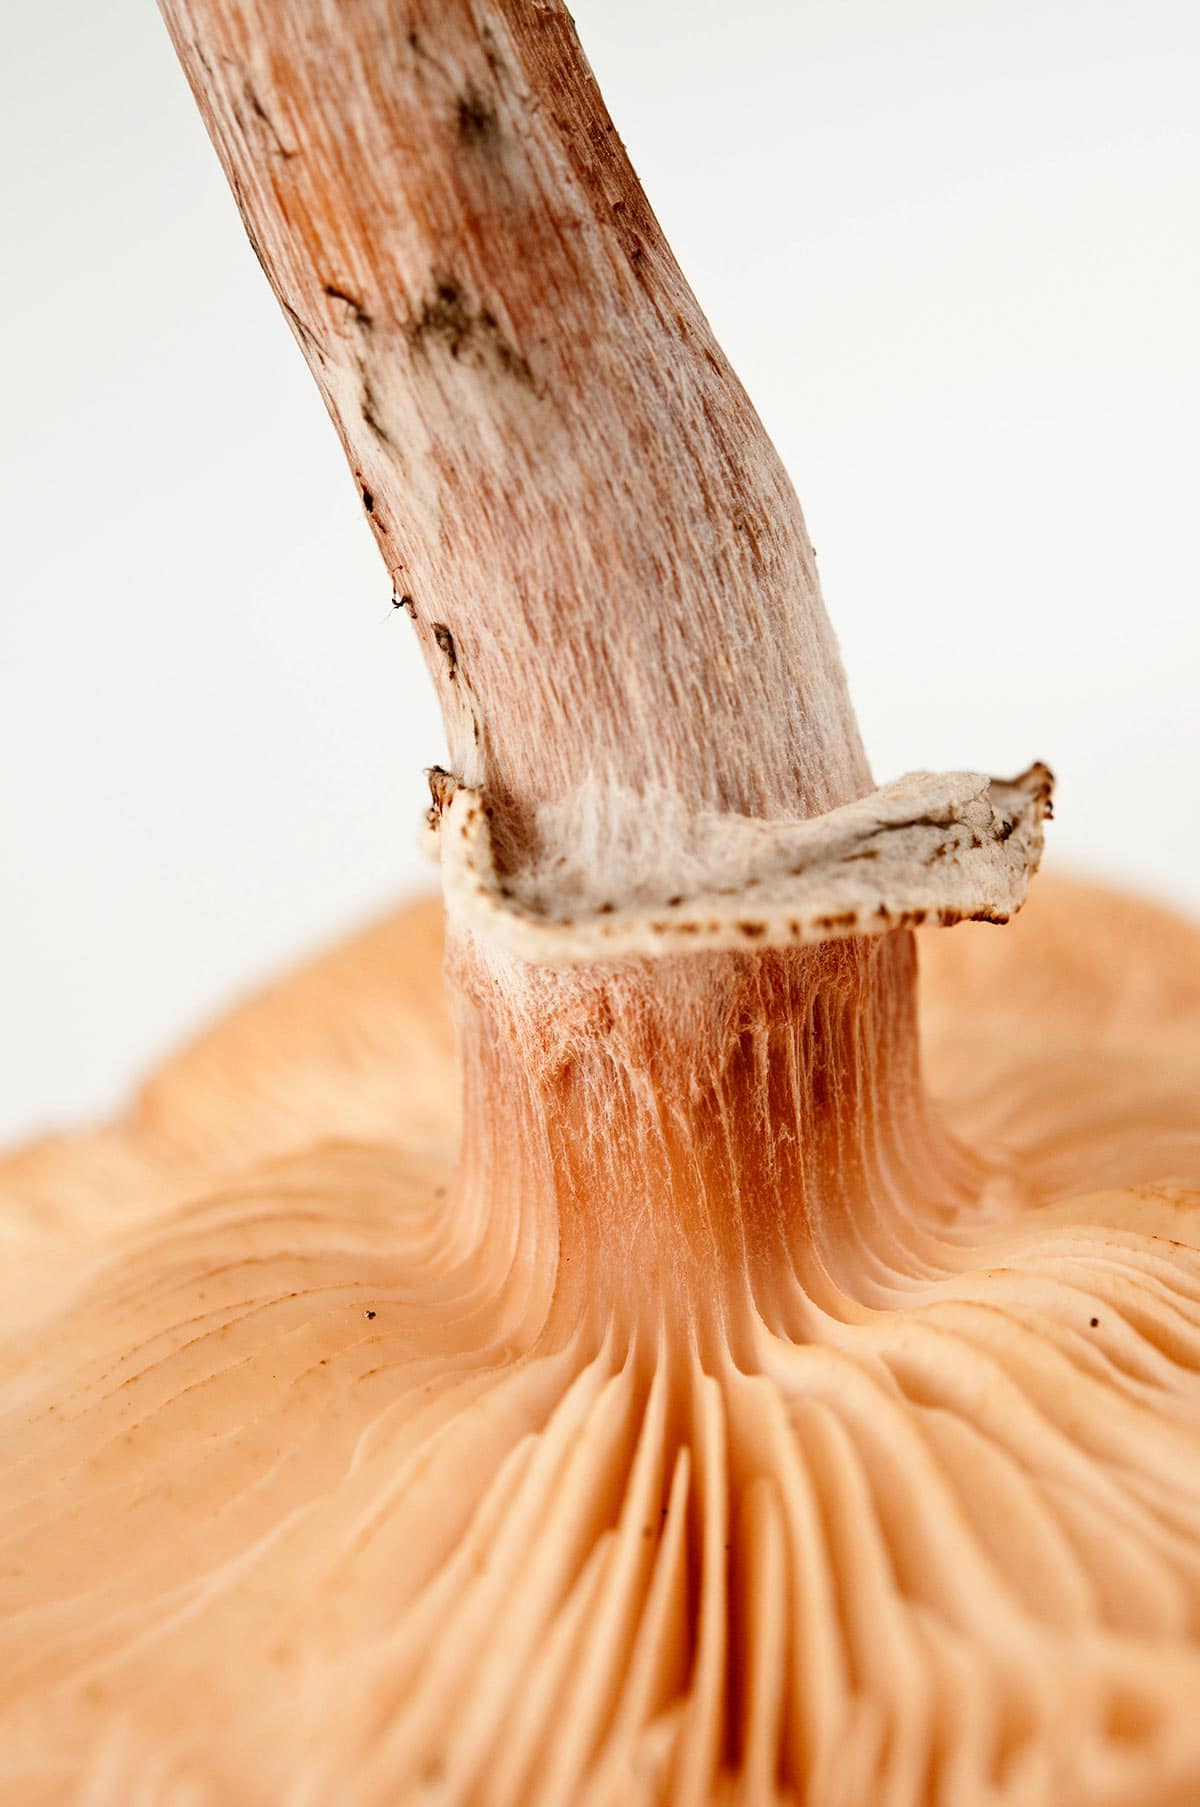 Decurrent gills on a honey mushroom